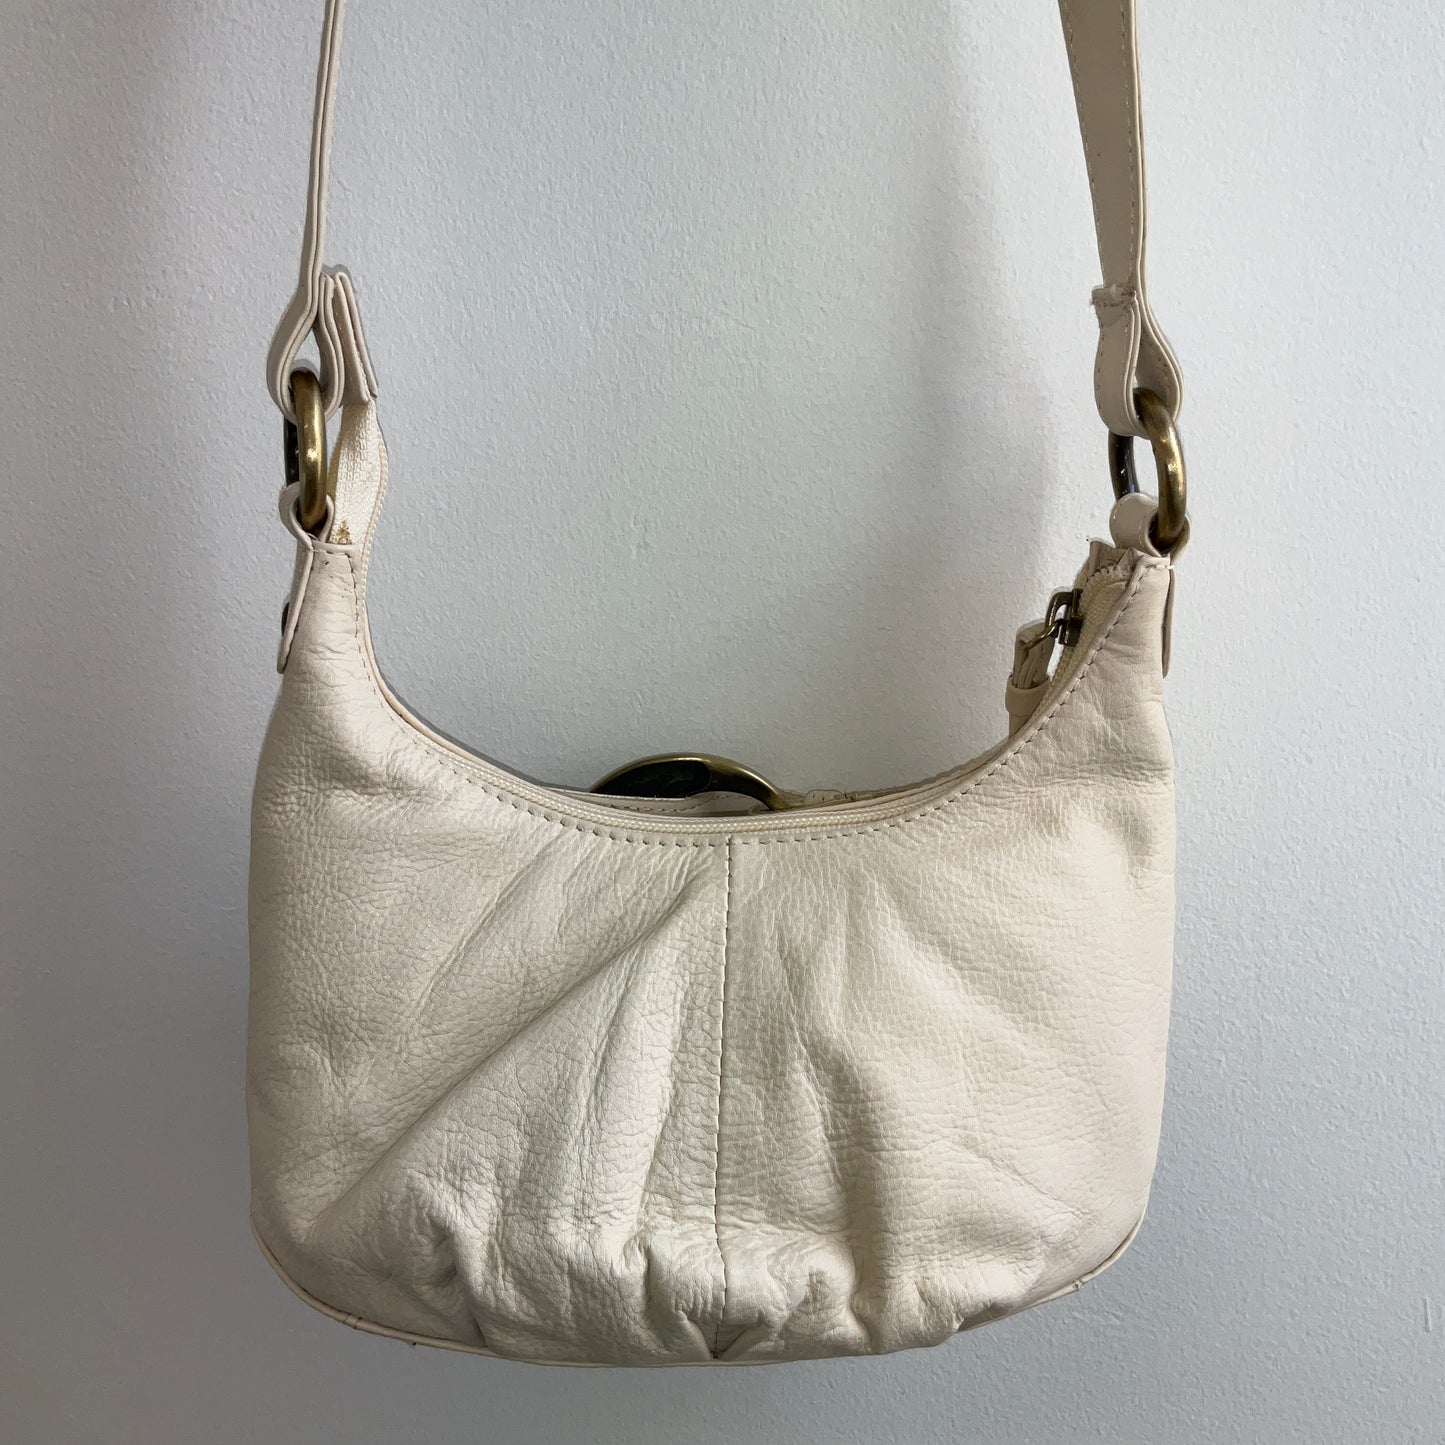 Suzy Smith - Small Handbag